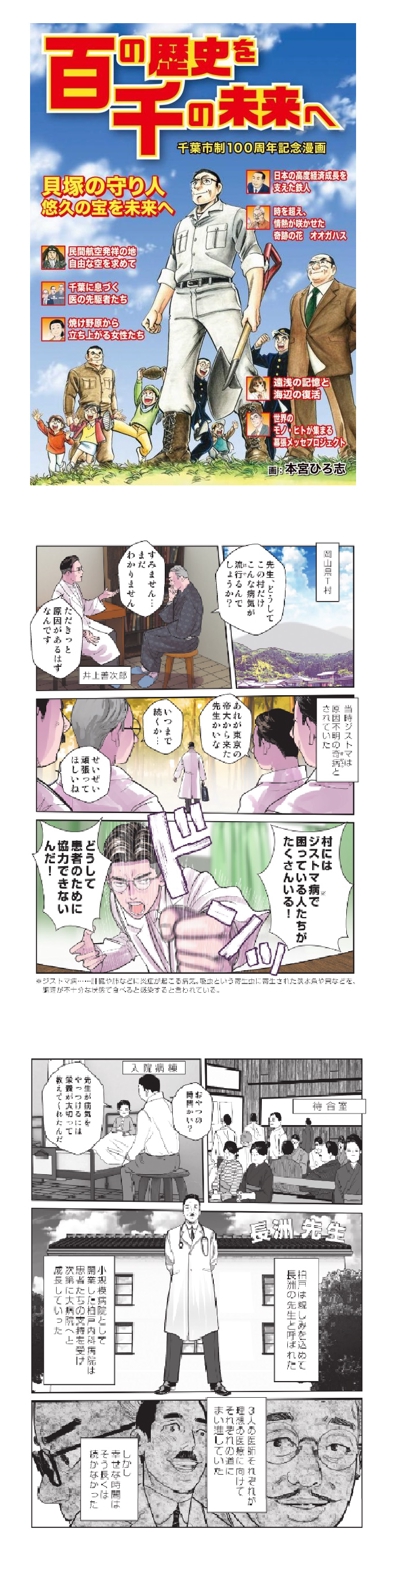 千葉市制100周年記念漫画